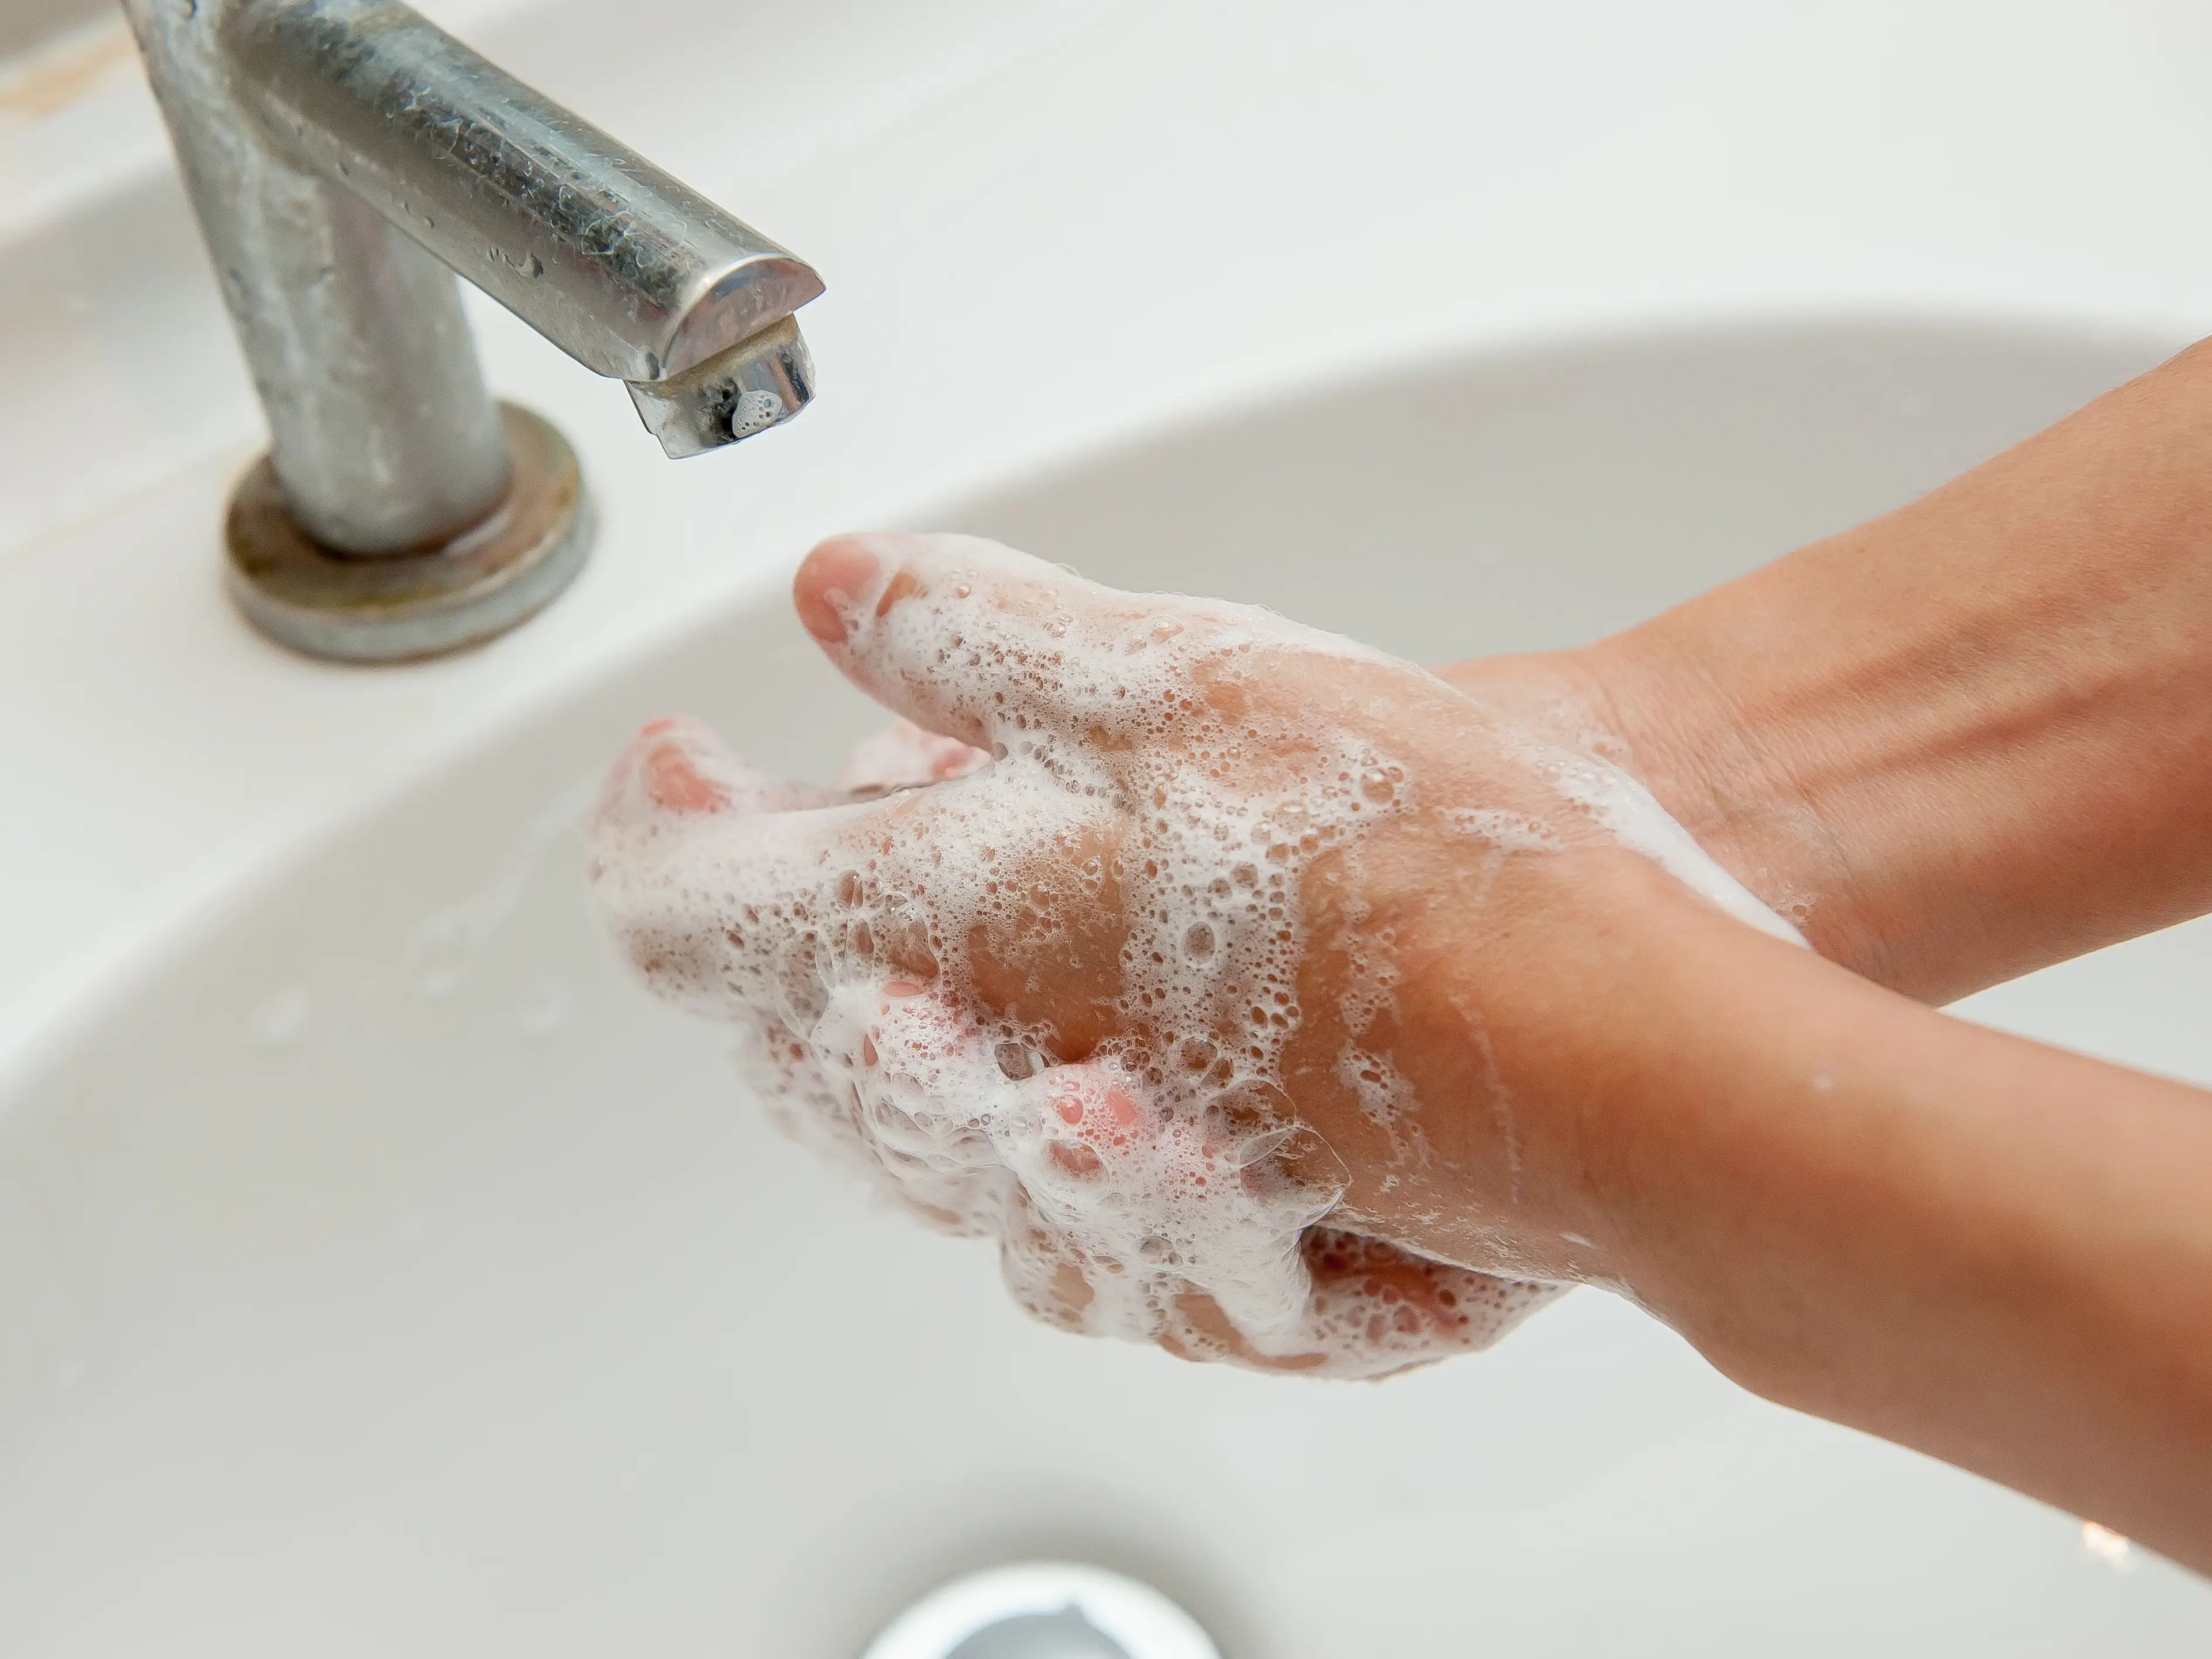 Siempre deberías lavarte las manos antes de la cara.